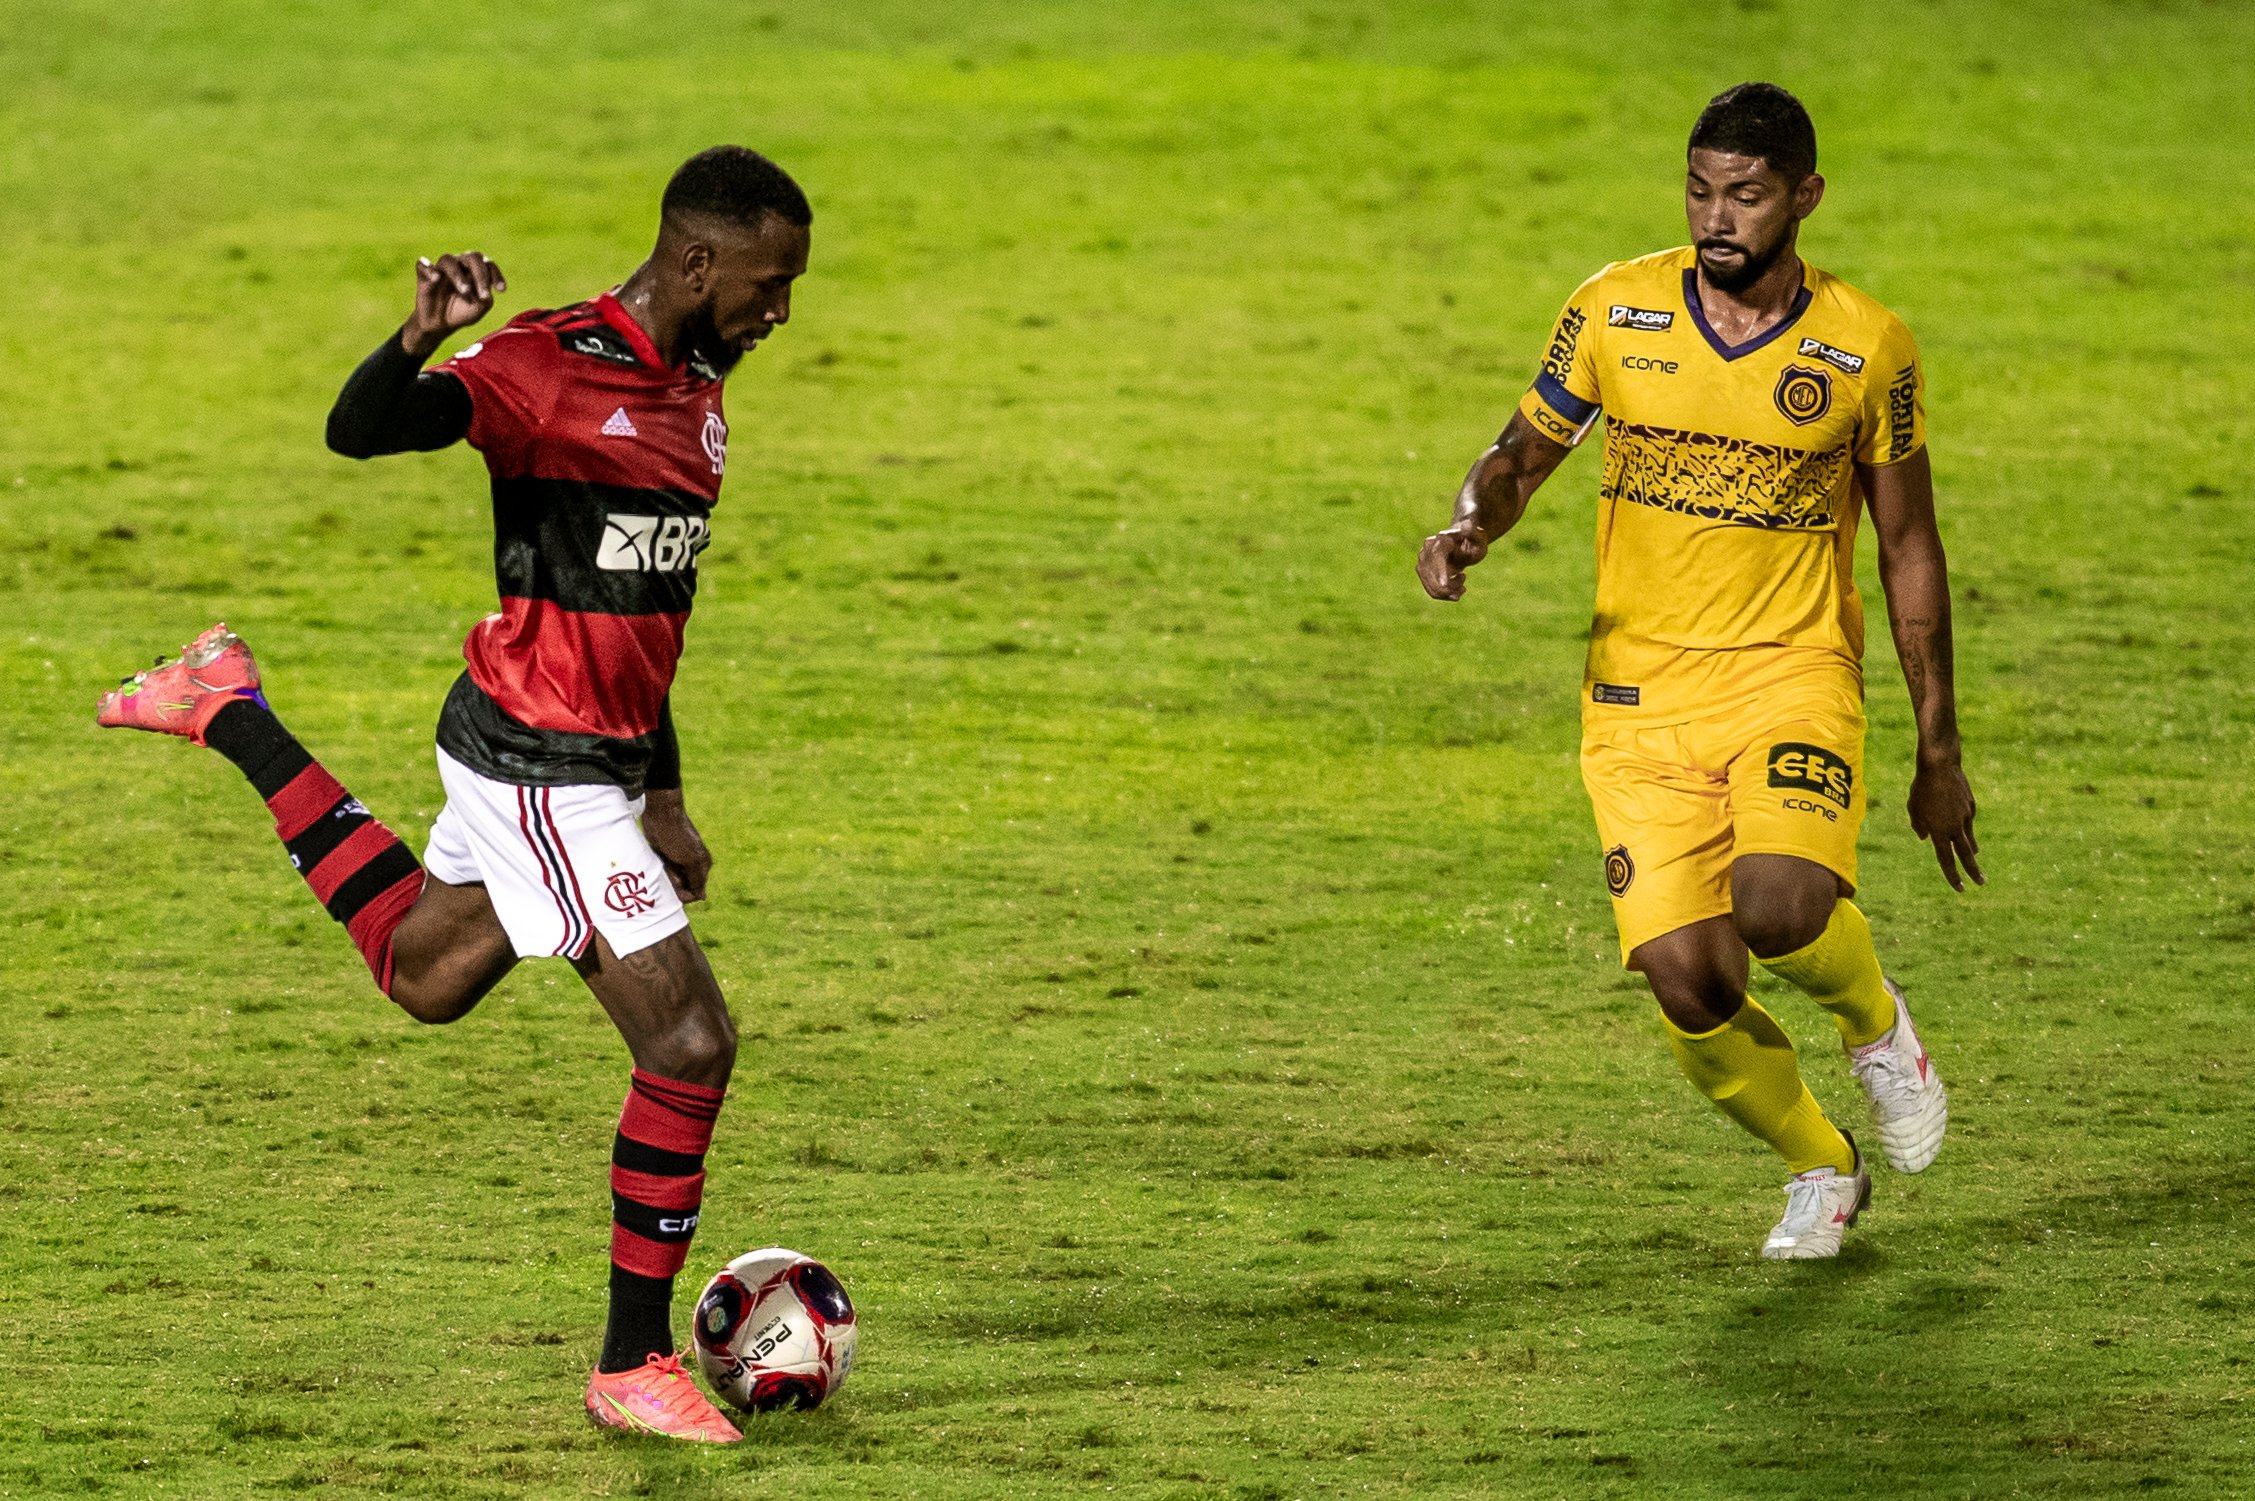 PLACAR FI: Com goleada do Flamengo, confira TODOS os RESULTADOS desta segunda